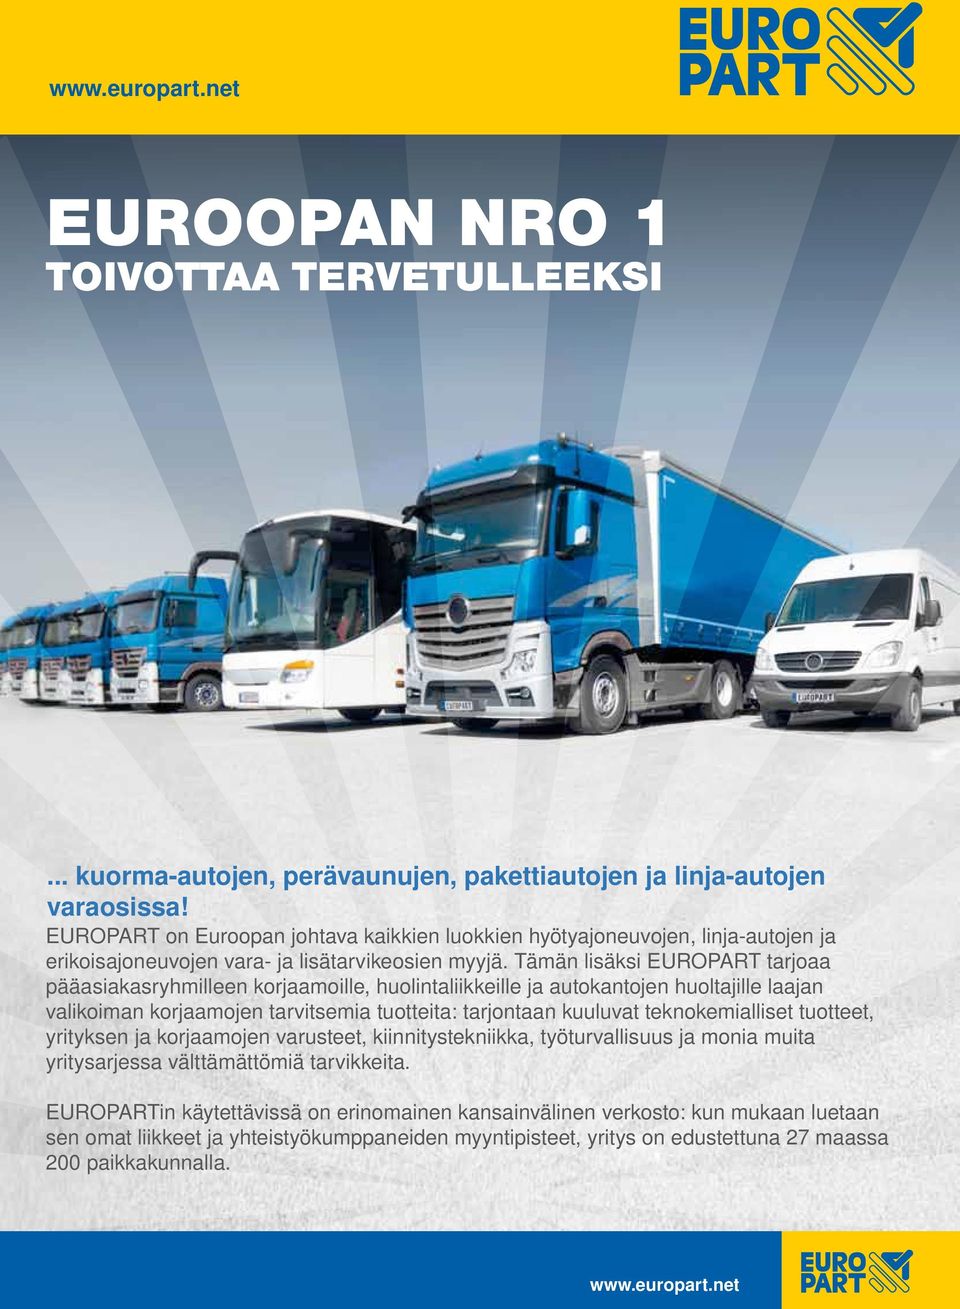 Tämän lisäksi EUROPART tarjoaa pääasiakasryhmilleen korjaamoille, huolintaliikkeille ja autokantojen huoltajille laajan valikoiman korjaamojen tarvitsemia tuotteita: tarjontaan kuuluvat